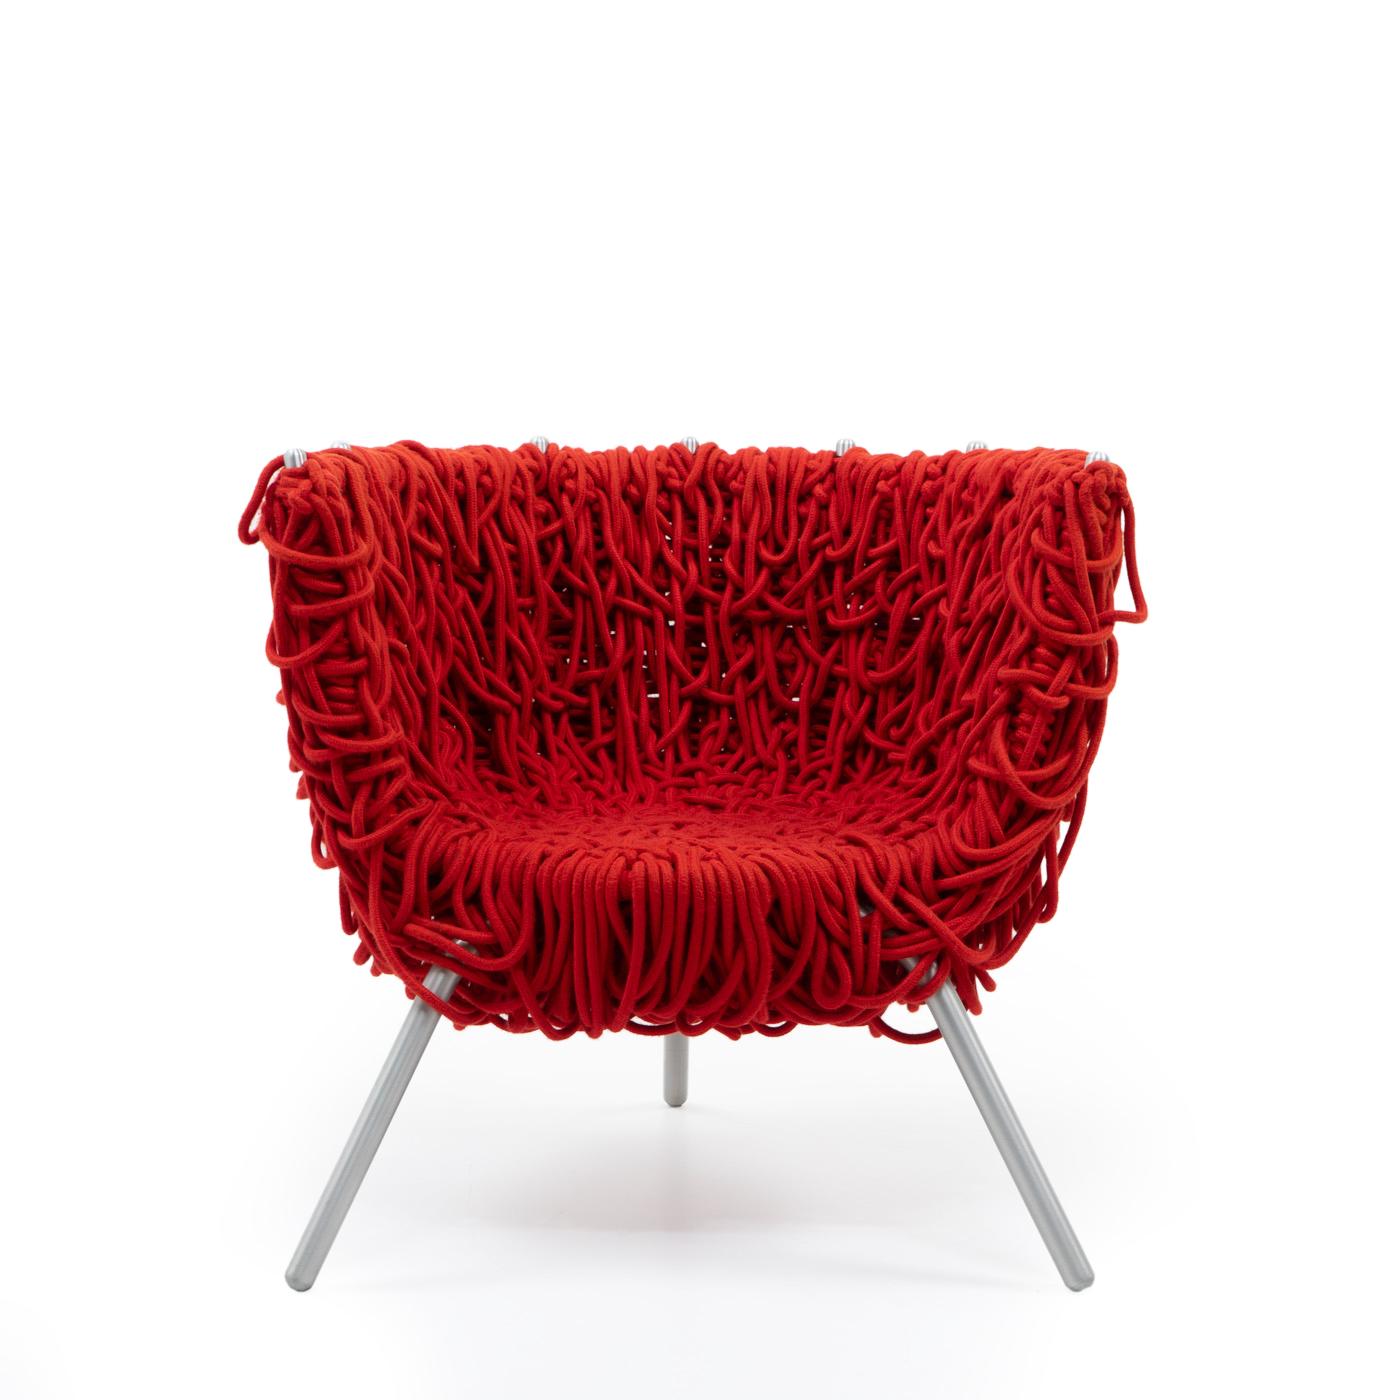 Der Vermelha Chair der Gebrüder Campana ist ein unverwechselbares Stück zeitgenössischen Designs. 

Der Stuhl ist von der brasilianischen Kultur inspiriert und zeichnet sich durch ein einzigartiges und komplexes Design aus, das den